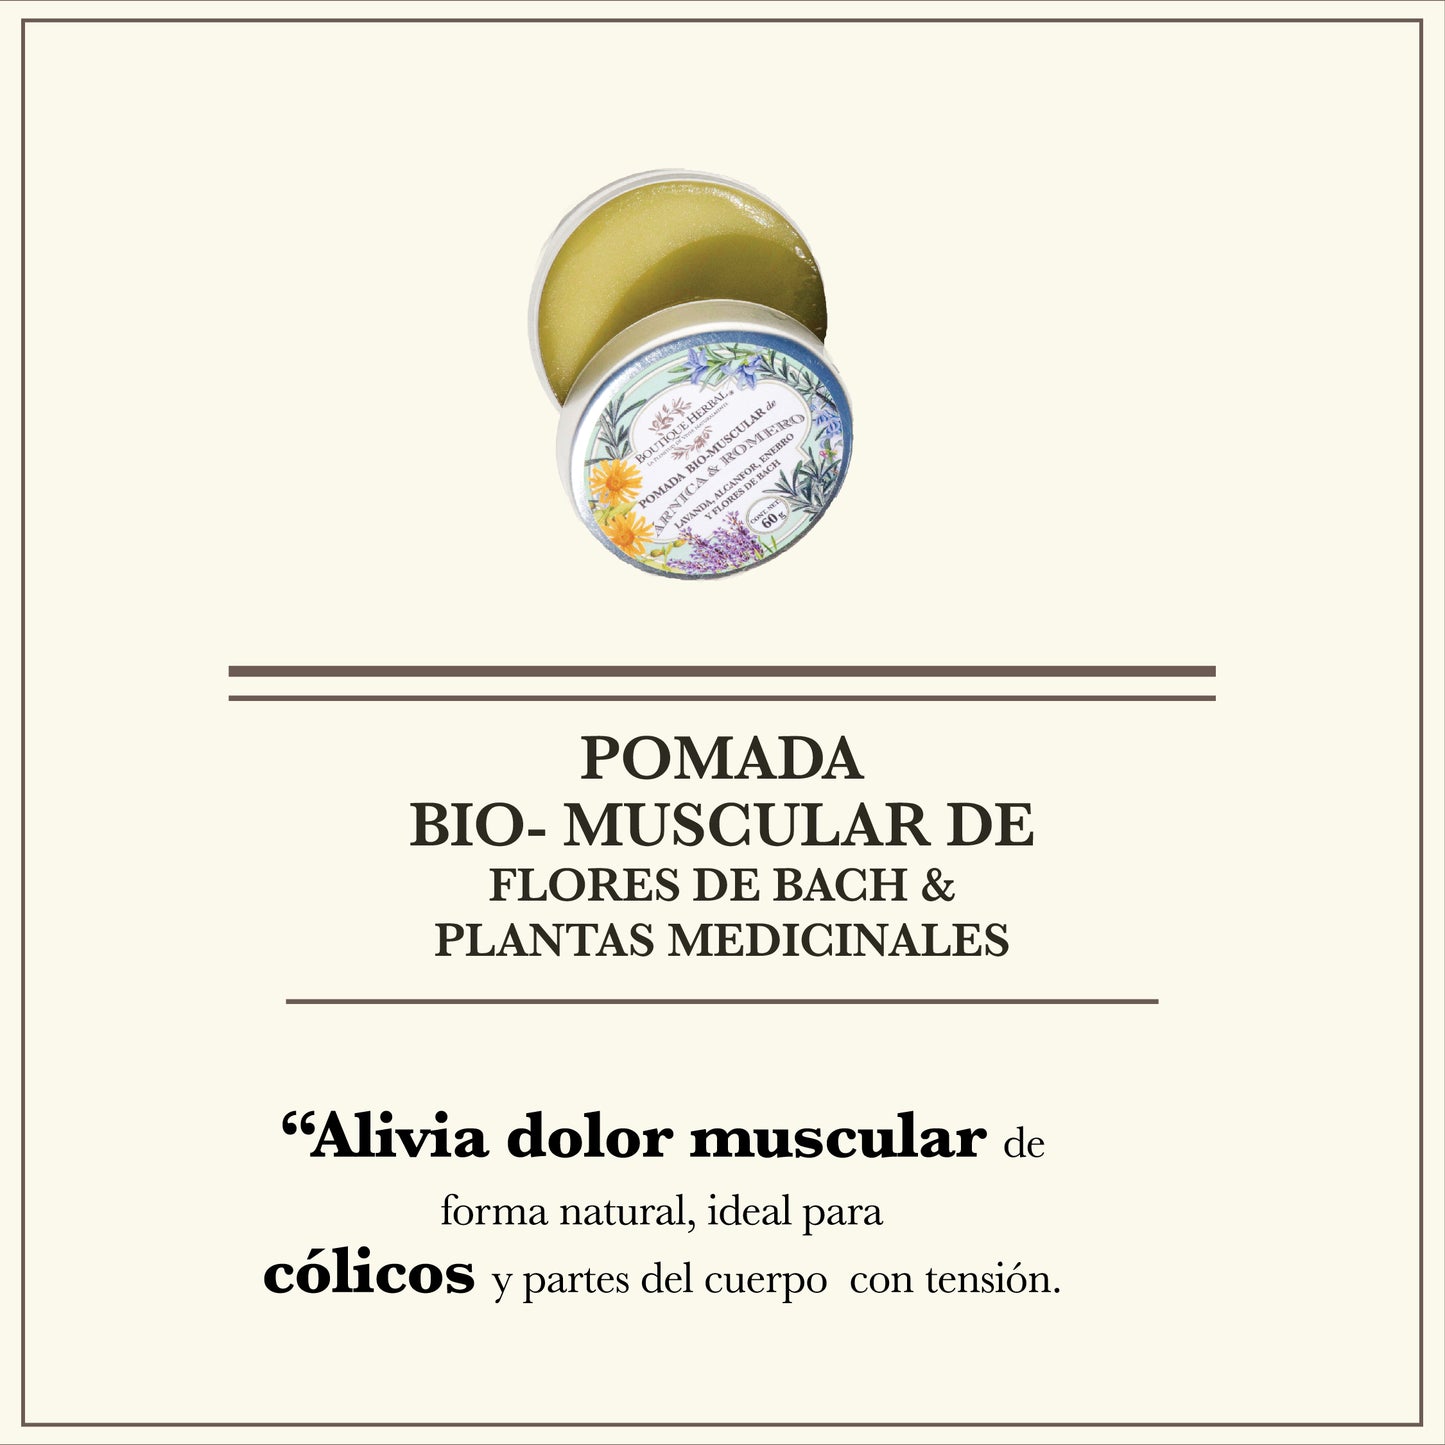 p. POMADA BIO- MUSCULAR FLORES DE BACH & PLANTAS MEDICINALES